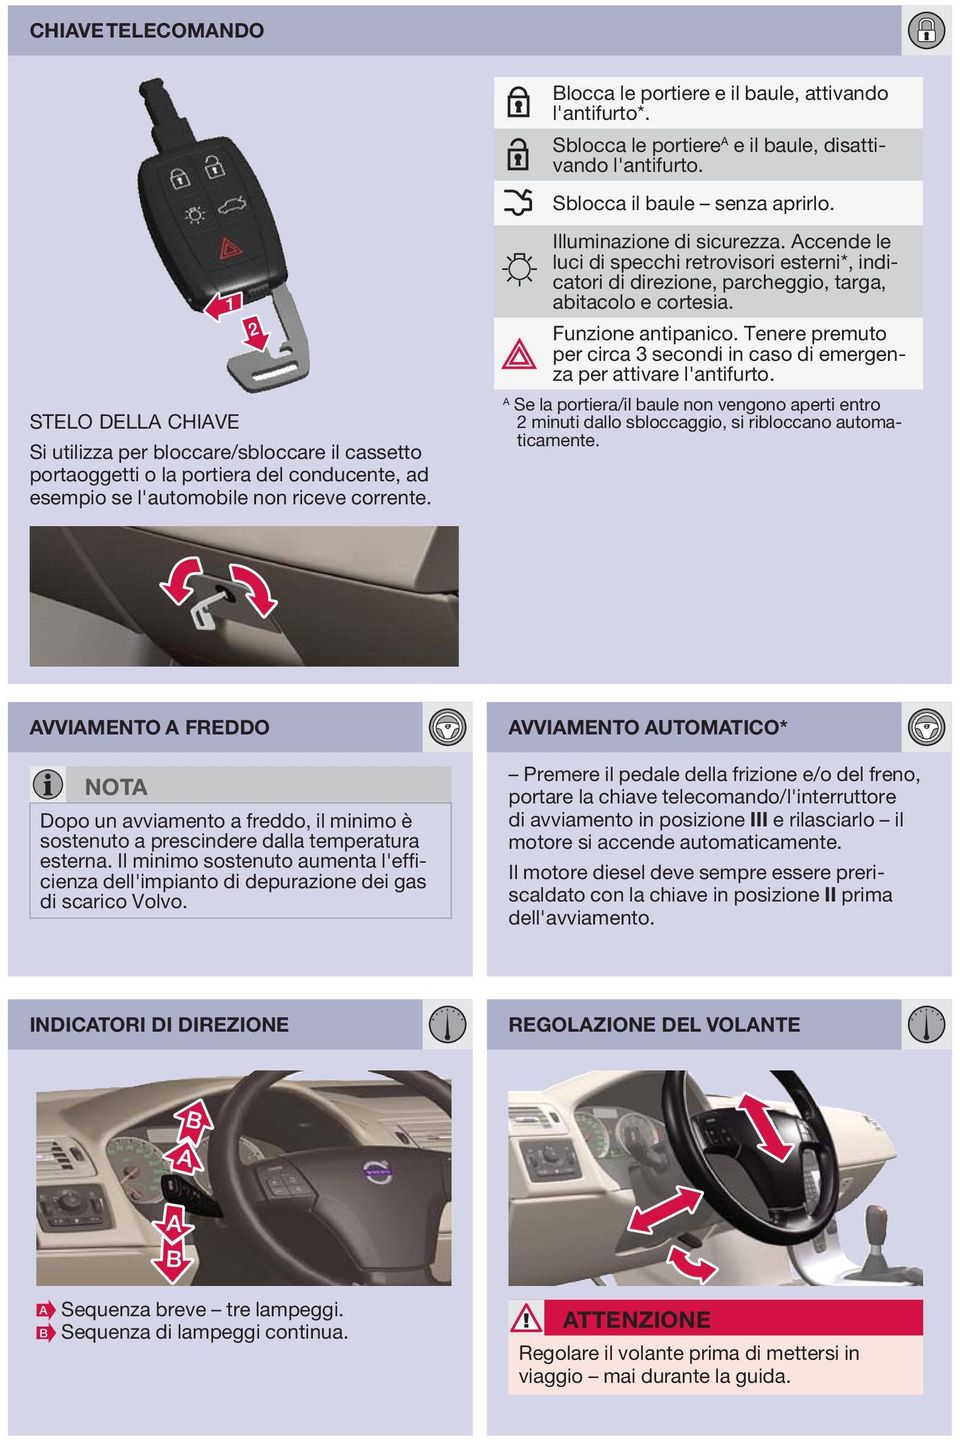 ccende le luci di specchi retrovisori esterni*, indicatori di direzione, parcheggio, targa, abitacolo e cortesia. Funzione antipanico.